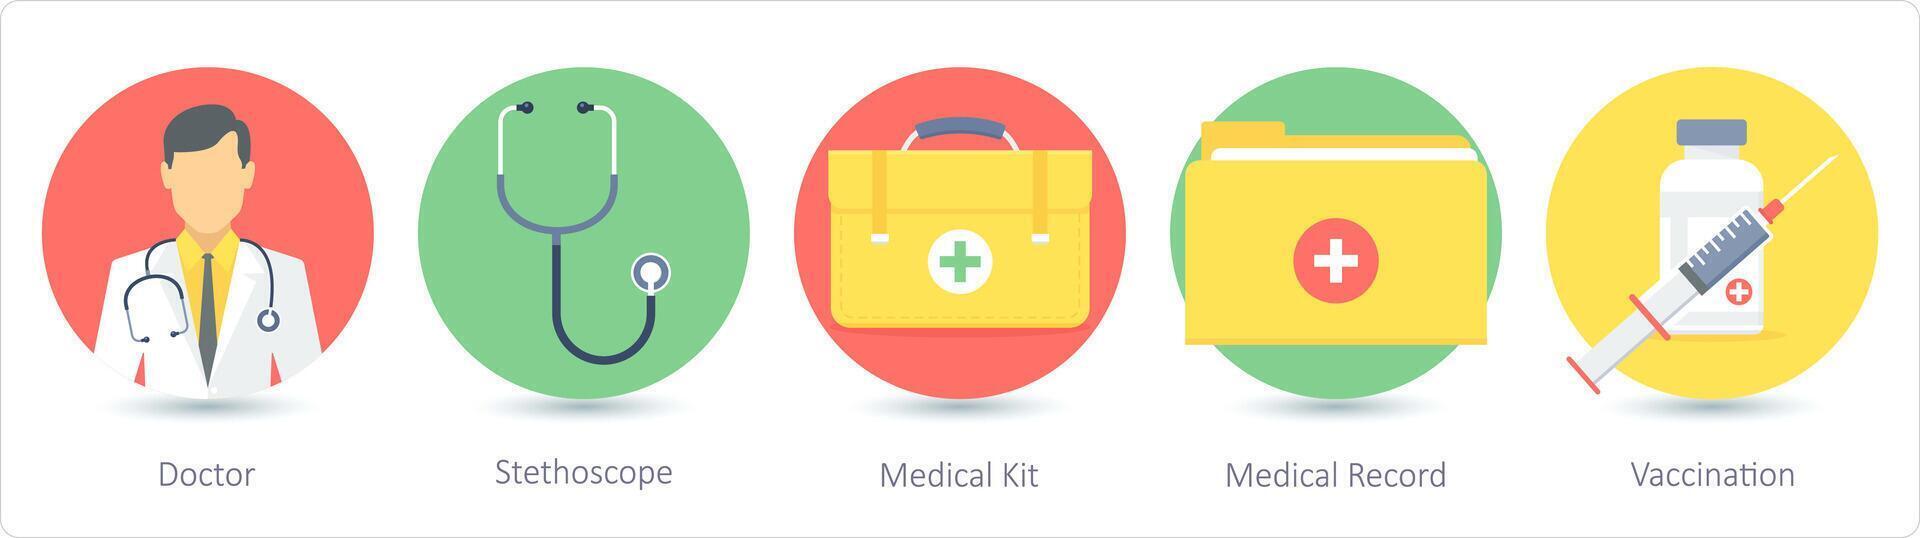 en uppsättning av 5 medicinsk ikoner som läkare, stetoskop, medicinsk utrustning vektor